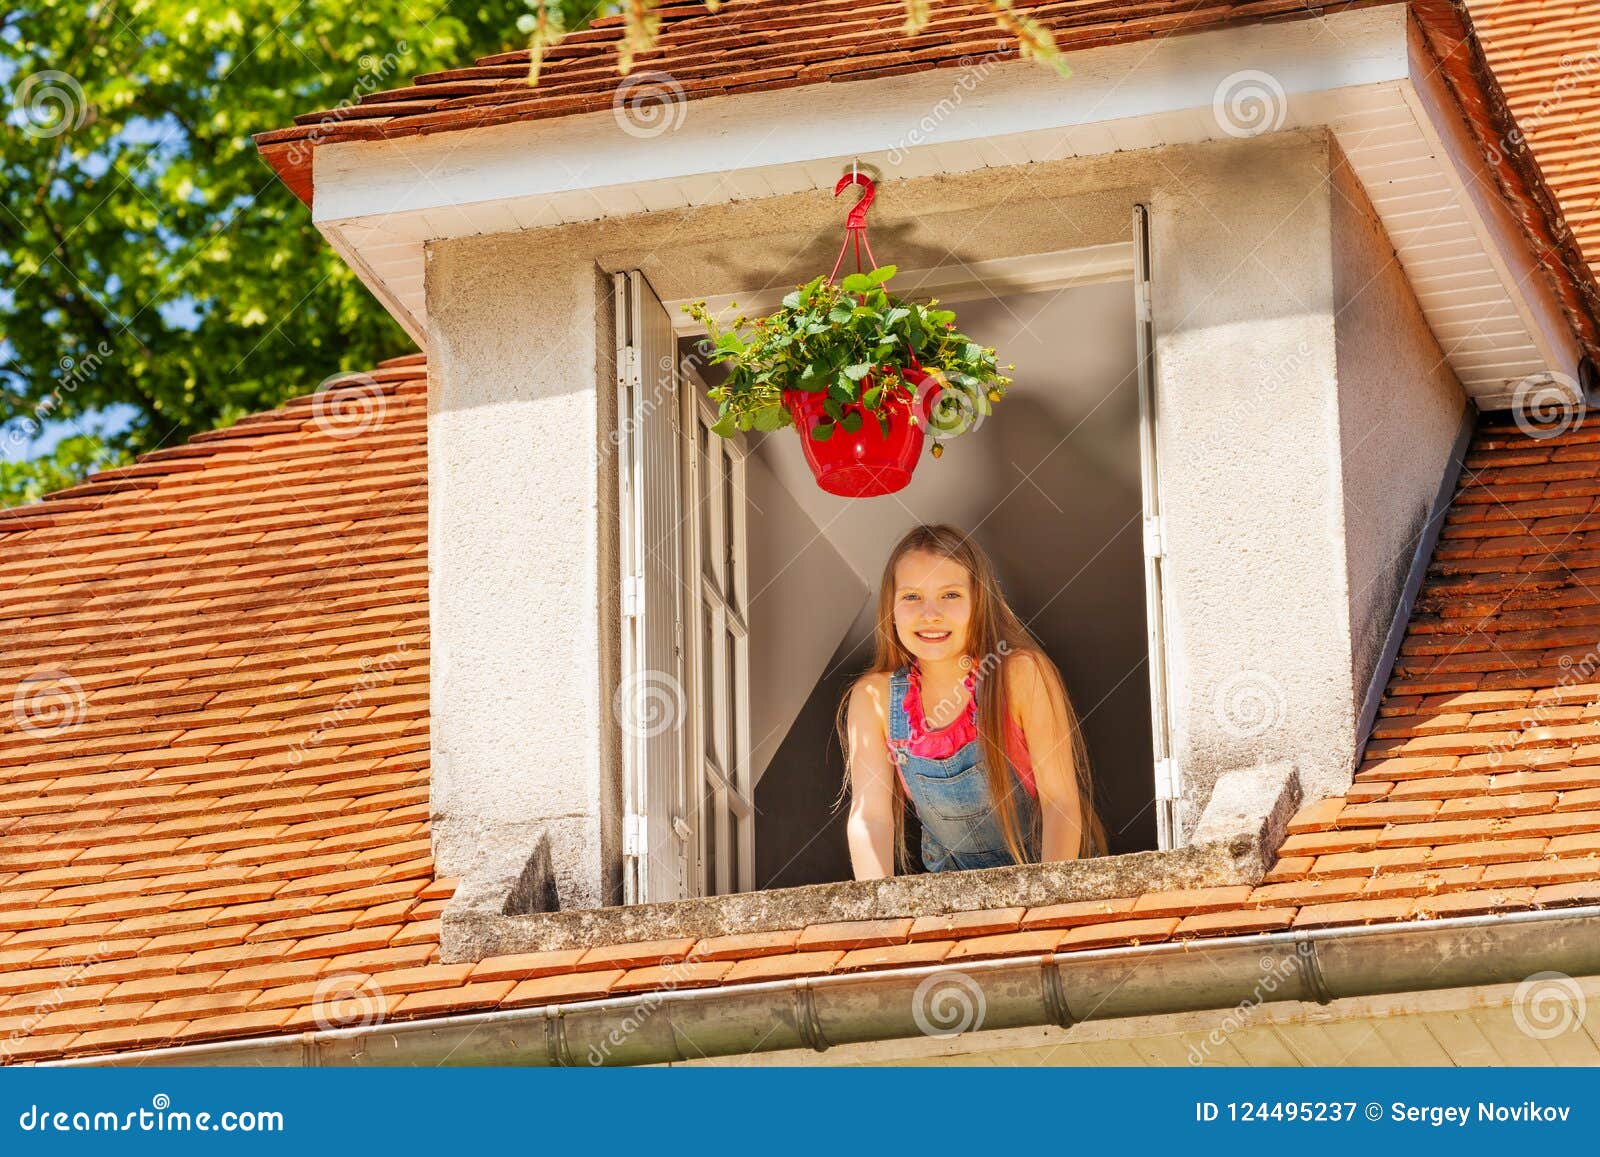 Smiling Girl Enjoying Morning In The Open Window Stock Image - Image of ... Open Window At Morning